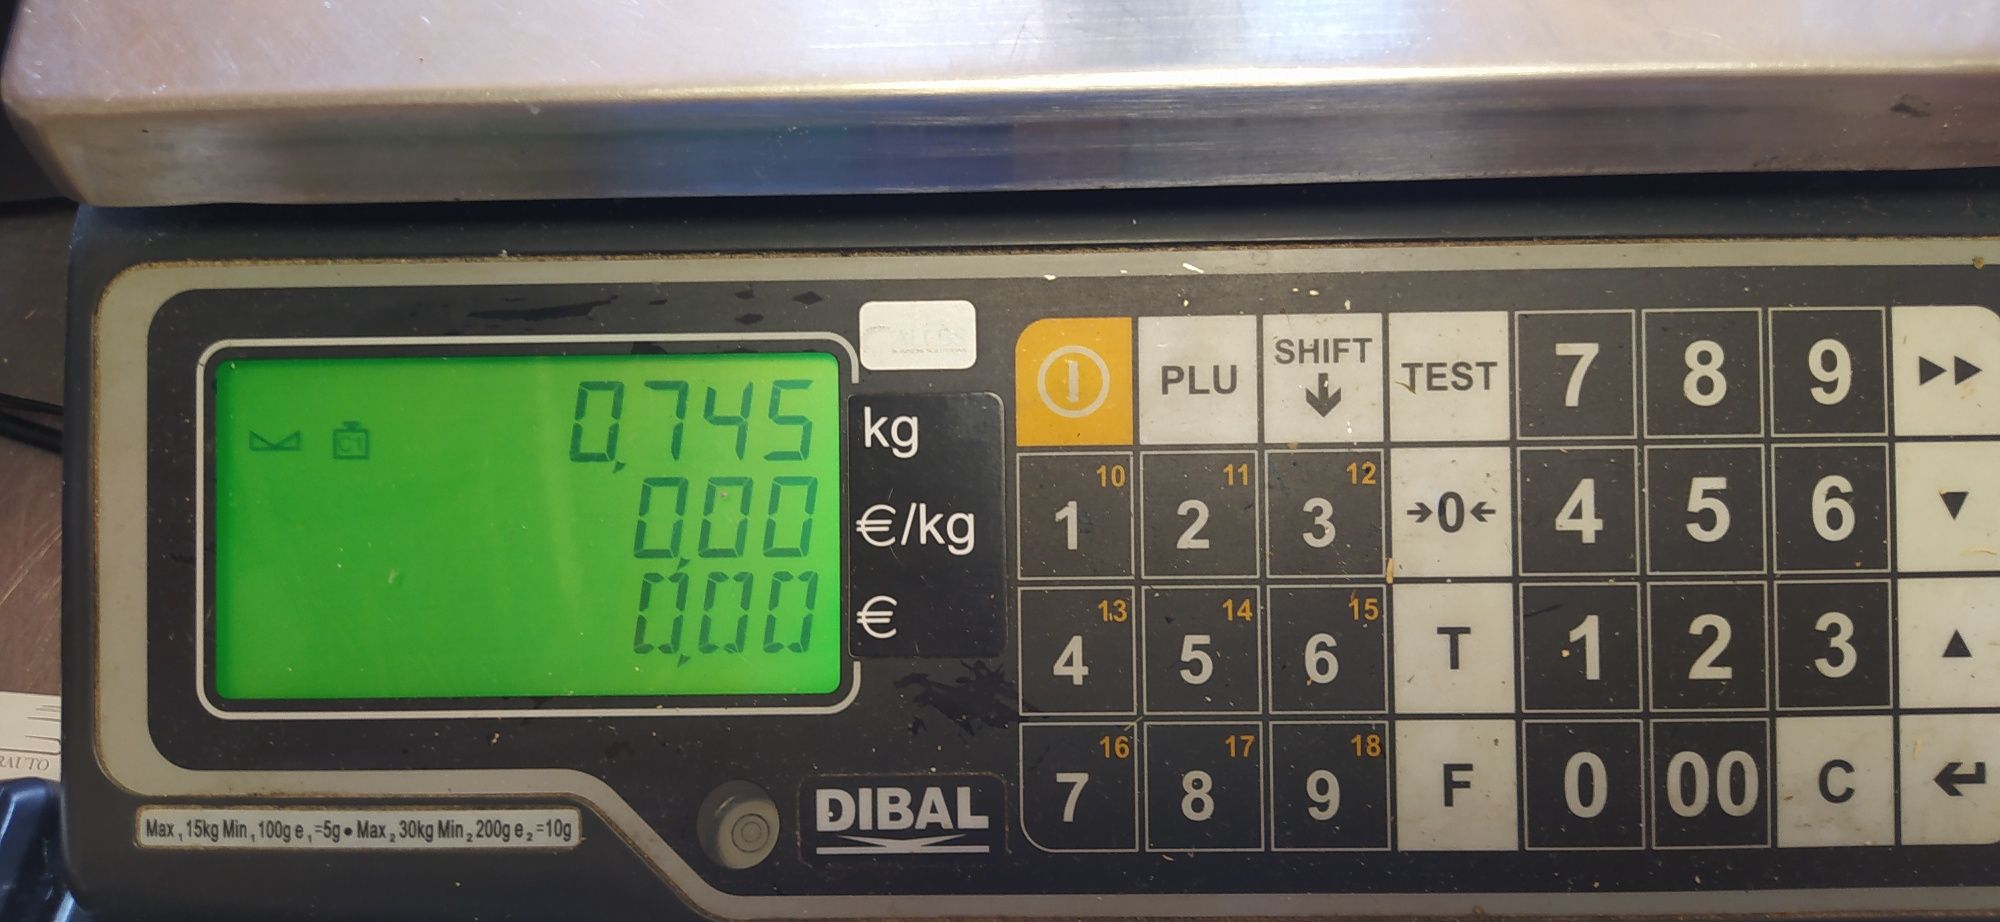 POS e Monitor Lg balança impressora